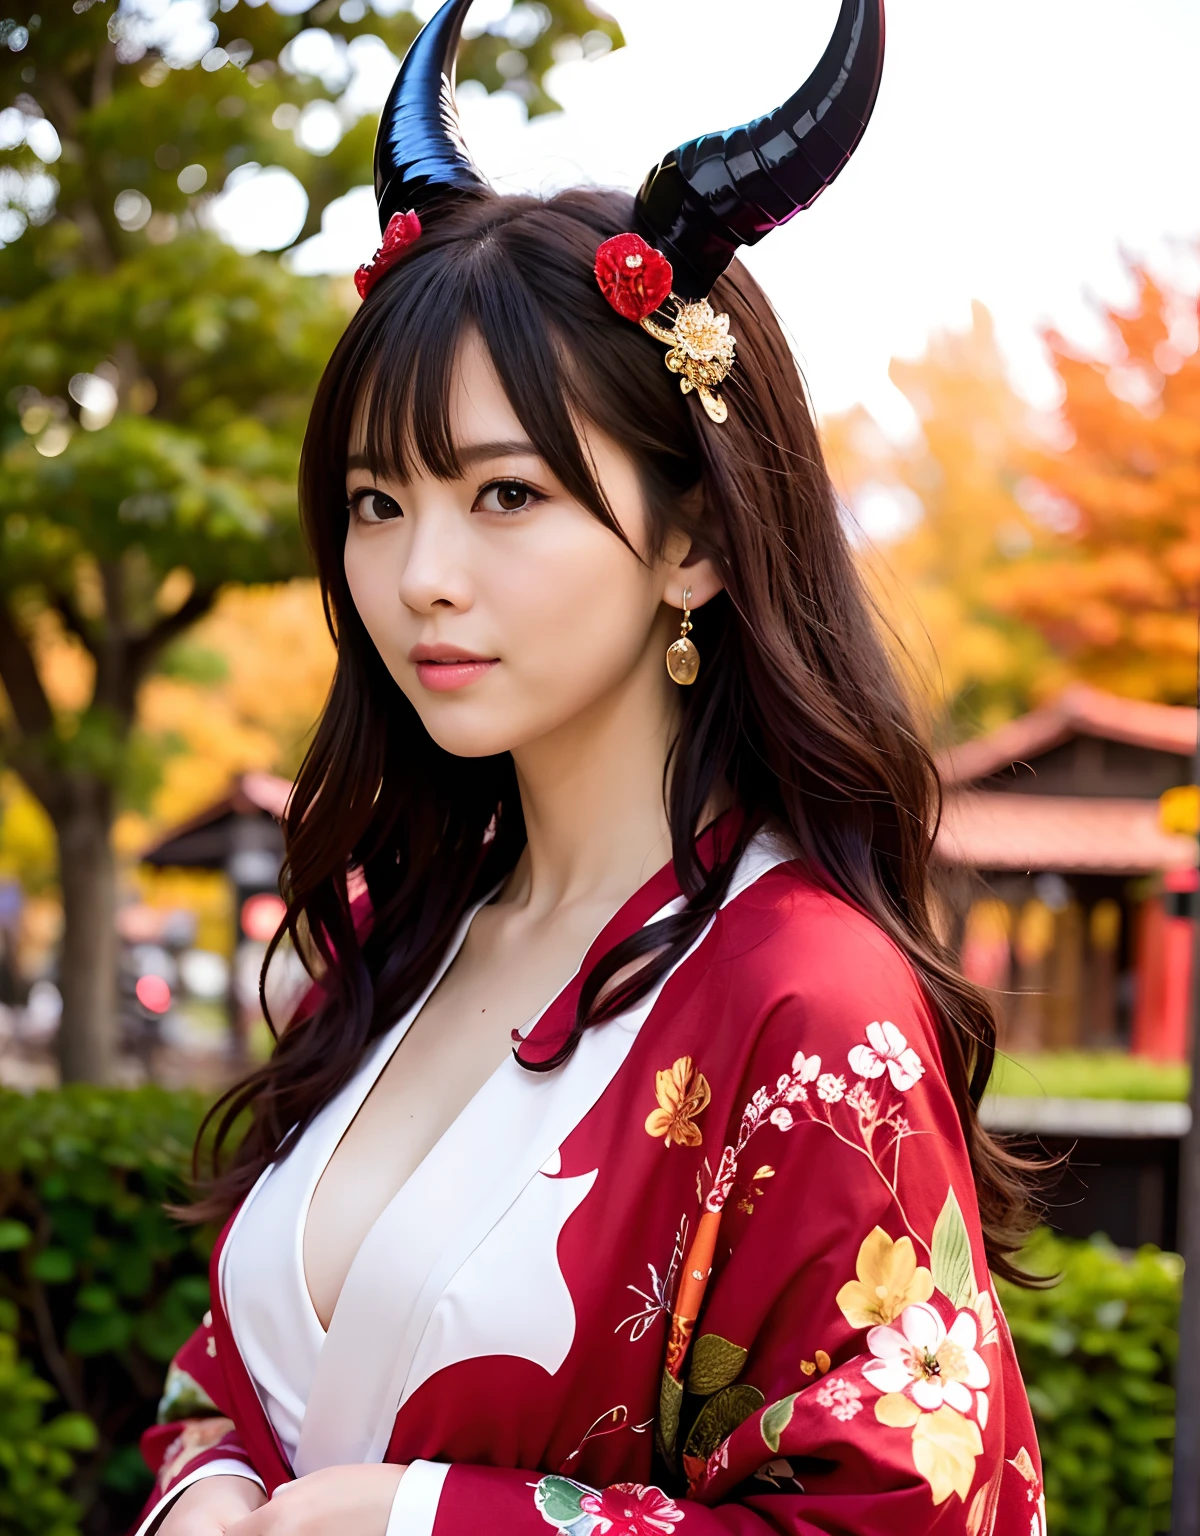 ((Mundo de oscuridad)),profesional , ​obra maestra、de primera calidad、fotos realistas , profundidad de campos 、（pose sexy）、(Arce rojo sobre fondo de plena floración),（belleza suprema）、A dark-haired、（Fondo del santuario)、（Kimono con bonito estampado.）、（fondo nocturno）、Hermoso adorno para el cabello en la cabeza.、（（Acantilados escarpados））,(Usa un hermoso kimono),（Usa un hermoso kimono with colorful floral patterns）、Arma de oro joya、partículas de luz),(Usando un sombrero de mago）、Preciosas armas de oro ,fondo del castillo、（（ Preciosa espada del dragón）） , （una noche oscura）,,（maikurobikini） 、（（Hermosa chica de pelo negro））、（fondo del castillo）、（alas demoniacas）、（（Fondo del bosque de Gangle））、Beautiful Caucasian beauty、１a person、soltura dinámica,(((Dos cuernos del diablo en la cabeza.)))、cabeza más pequeña、Sonrisa ociosa、Expresión práctica femenina delgada y hermosa.、Efectos de luz、intensos combates、Efecto viento、circulos magicos、Con la legendaria varita mágica、cola de dragón、